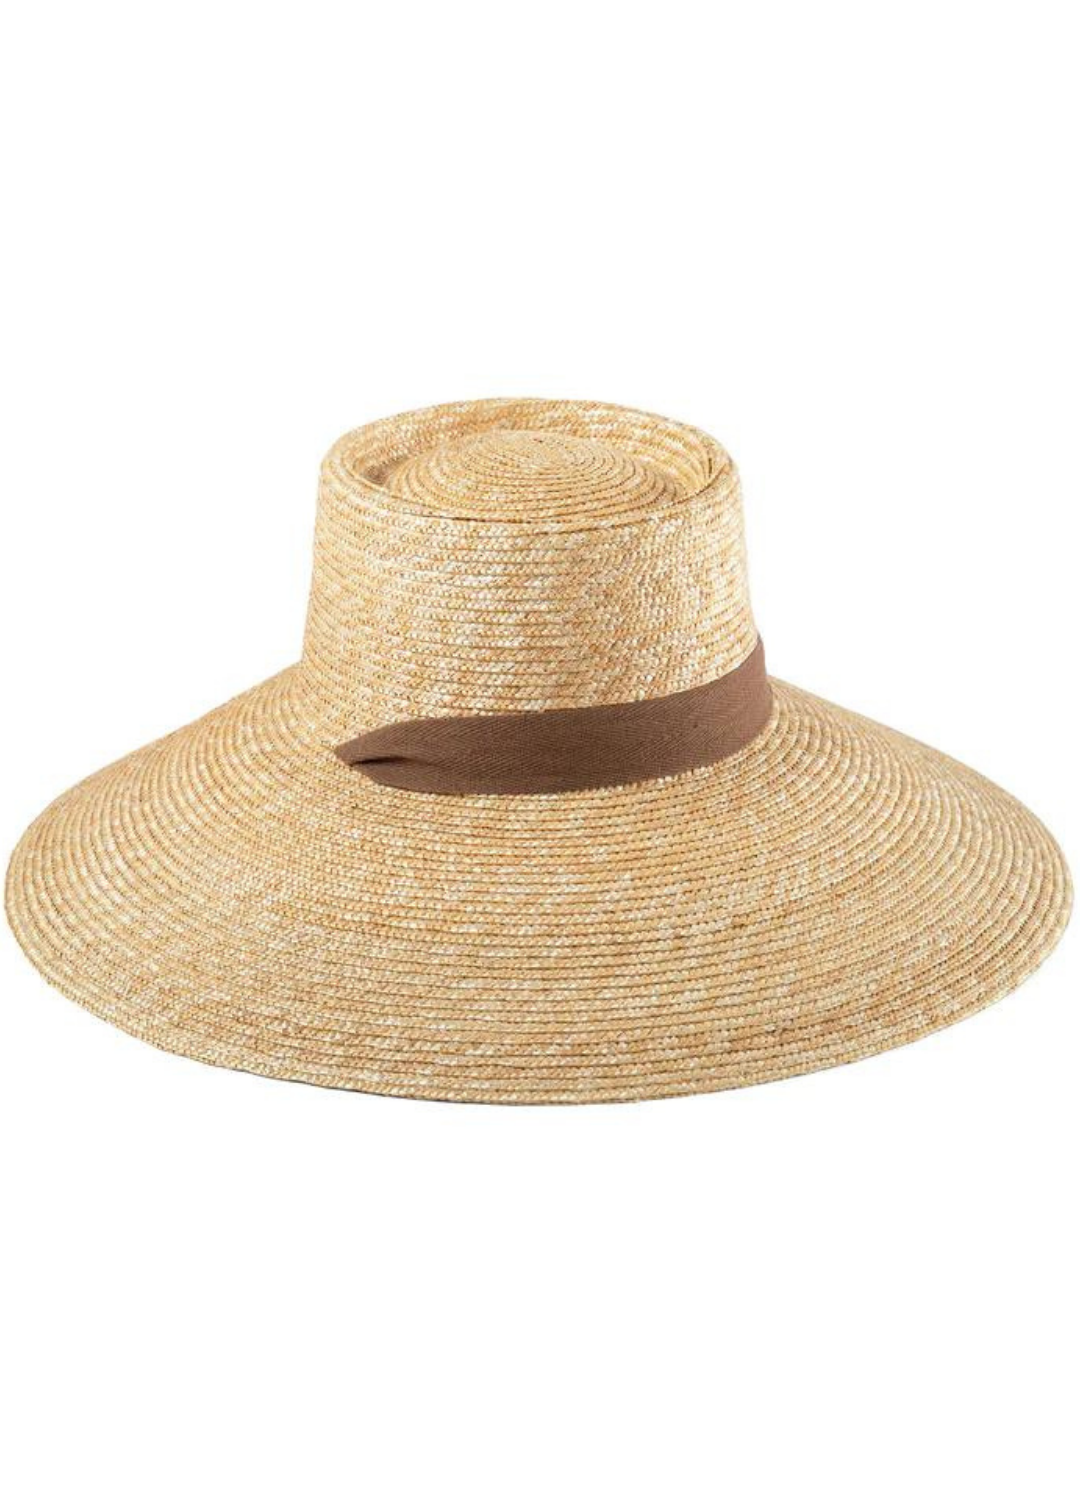 The Paloma Sun Hat